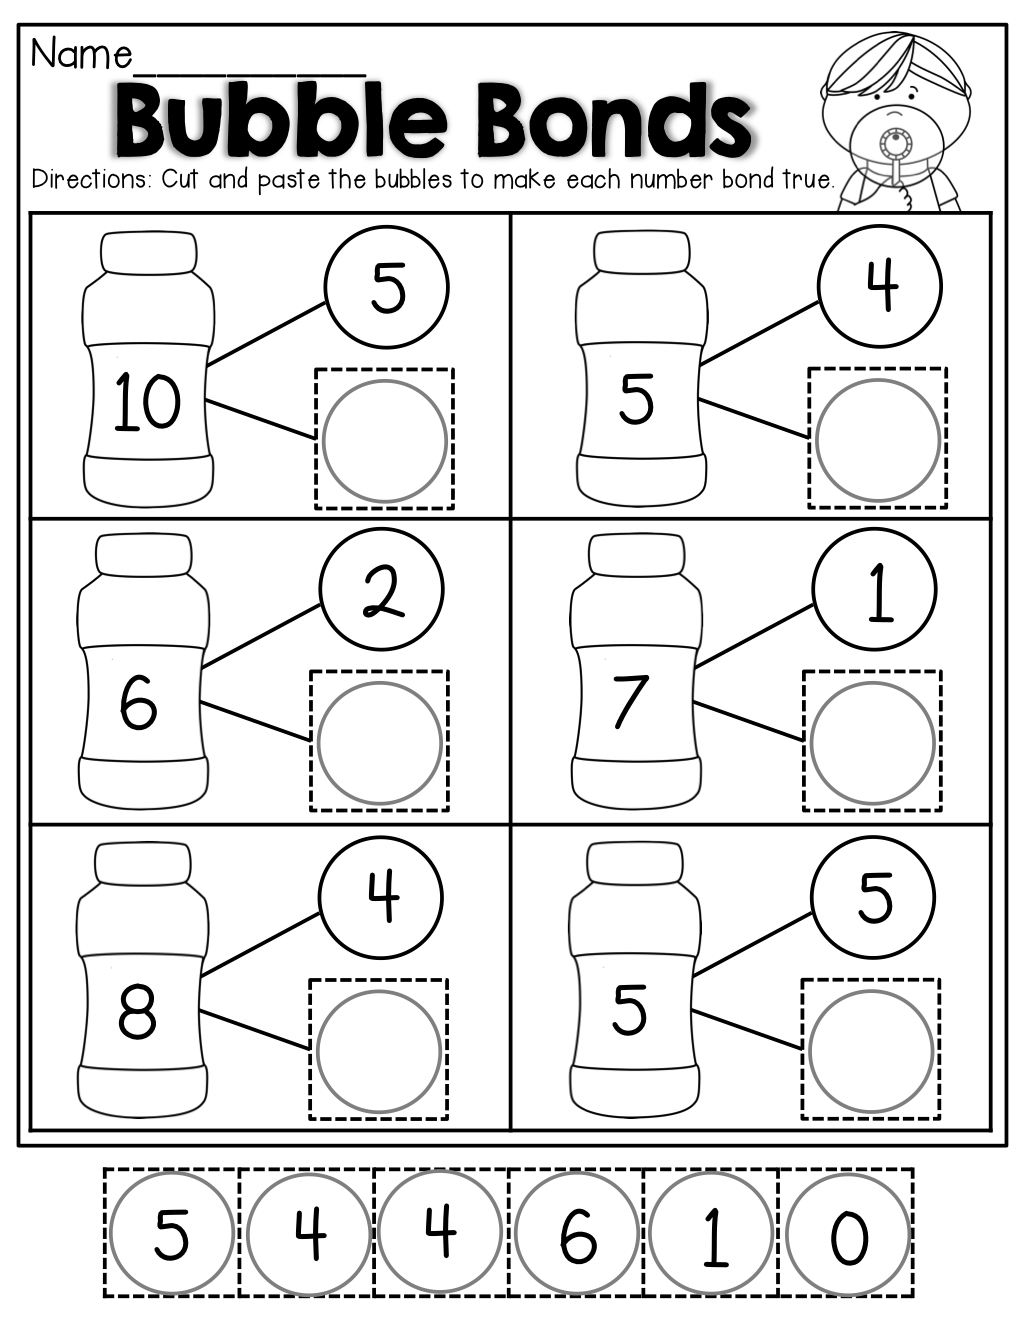  Free Printable Number Bonds Worksheets For Kindergarten Free Printable